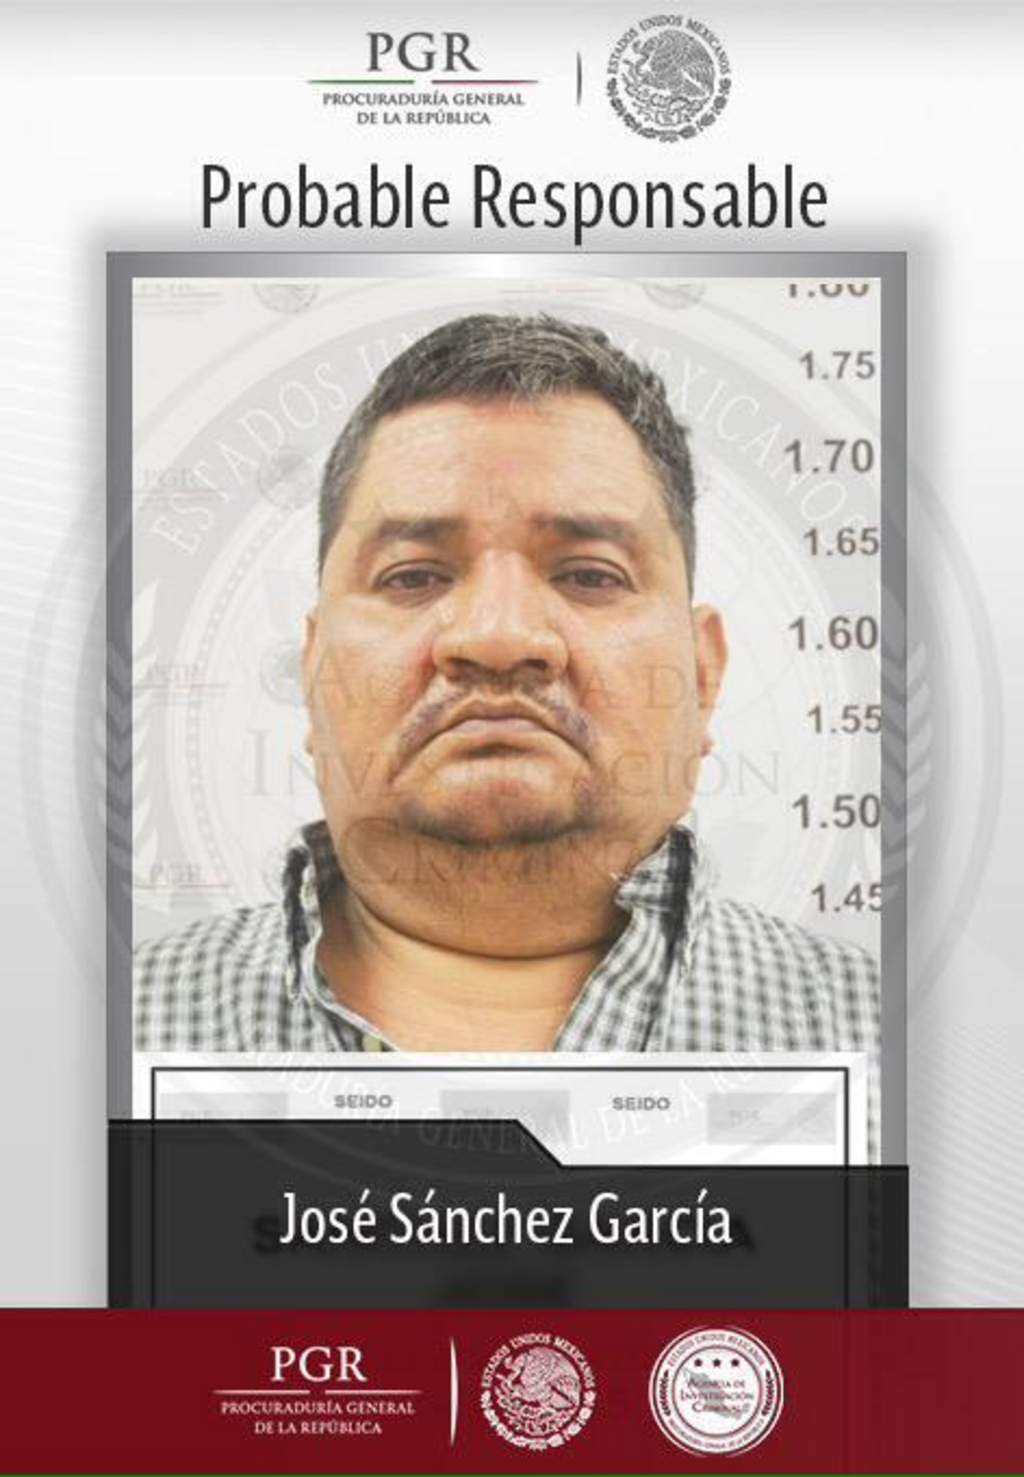 José Sánchez García era uno de los objetivos prioritarios del Gobierno mexicano en su estrategia en este estado del norte del país, informaron hoy fuentes oficiales. (Twitter)